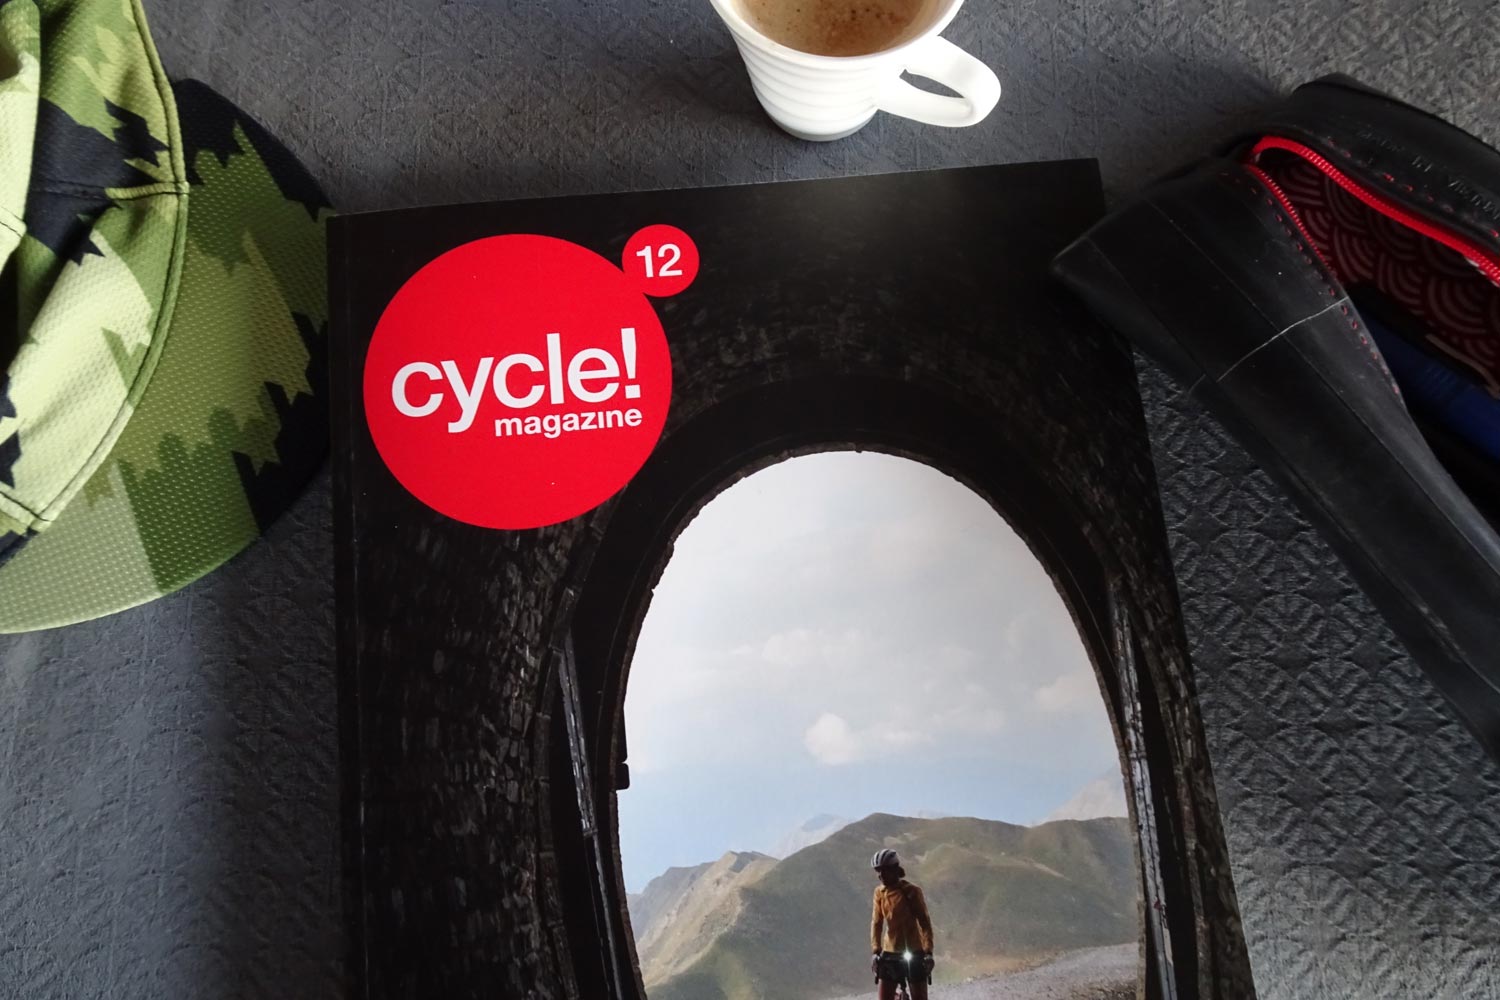 Cycle! Magazine